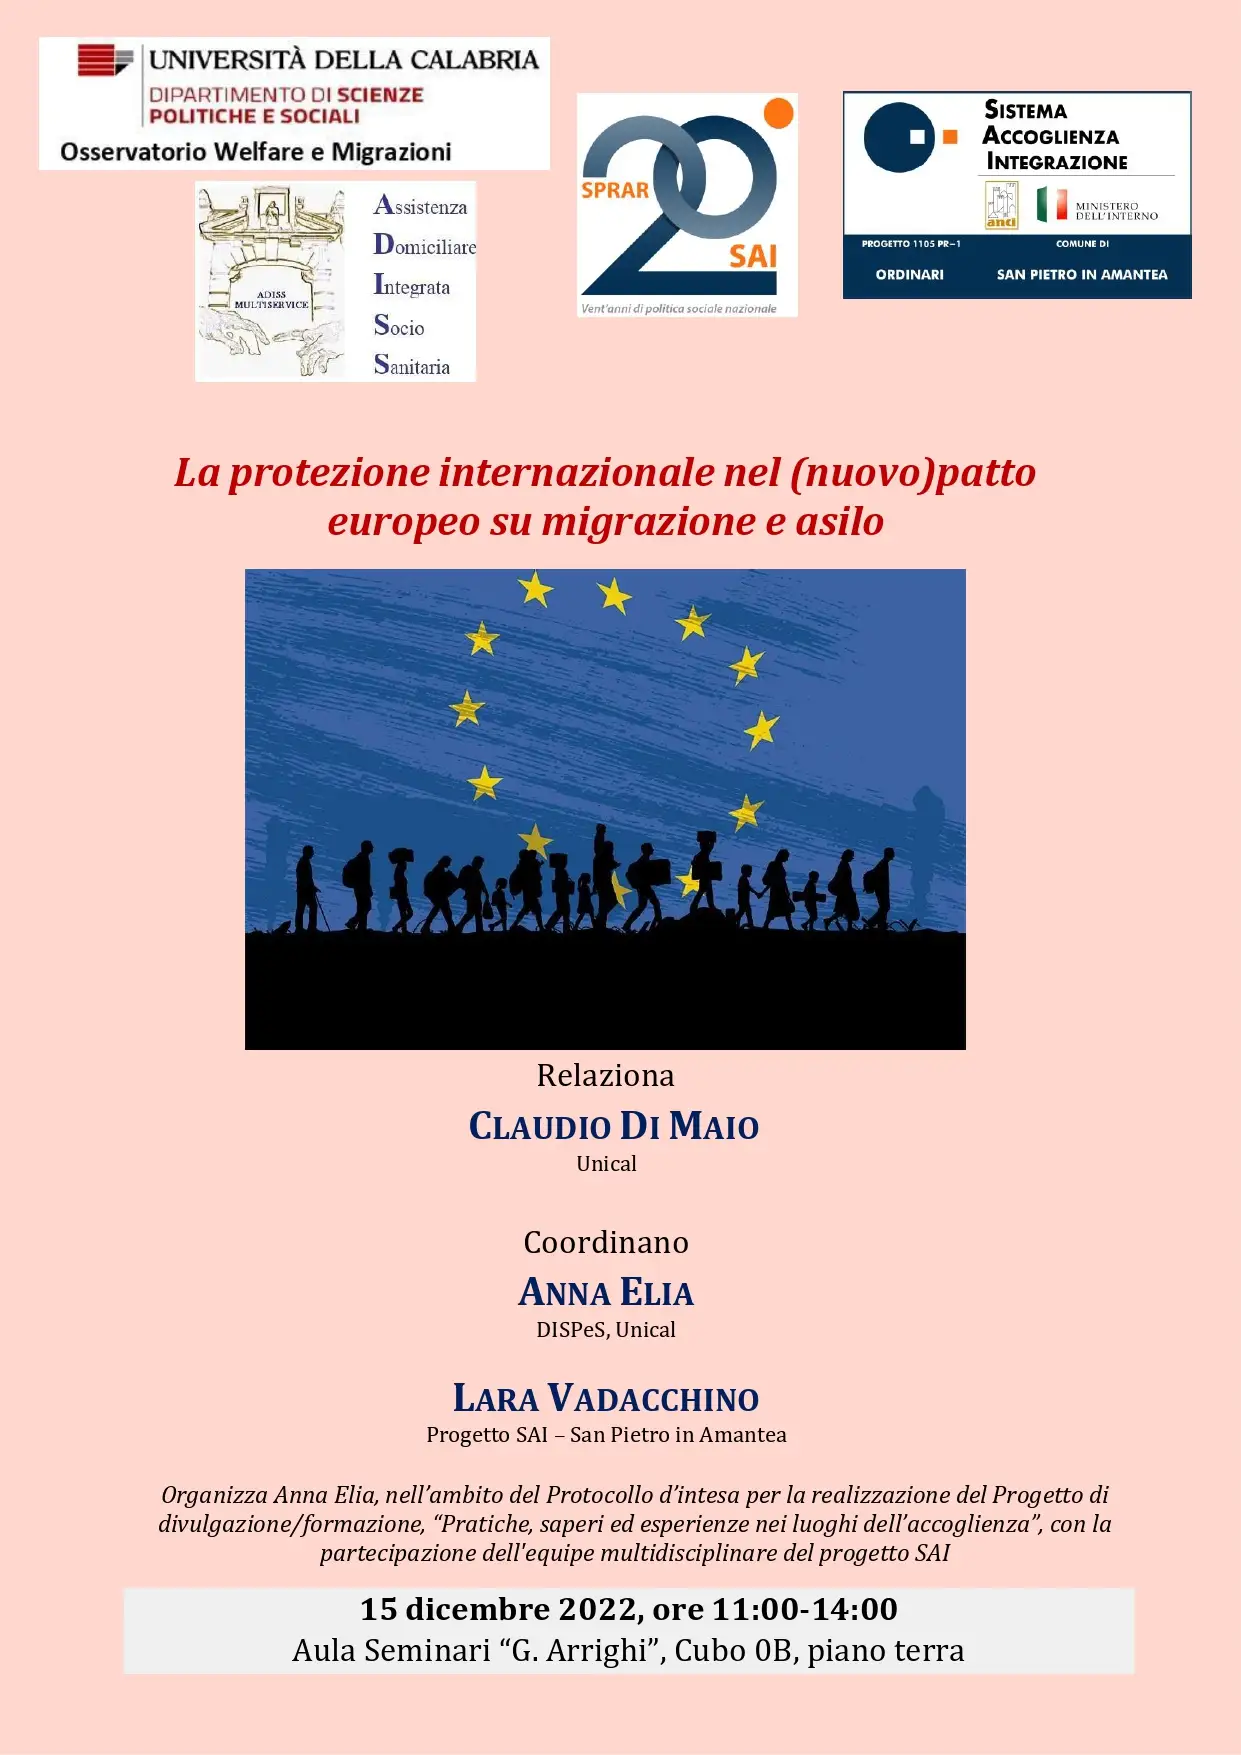 Seminario formativo
“La protezione internazionale nel (nuovo) patto europeo su migrazione e asilo”